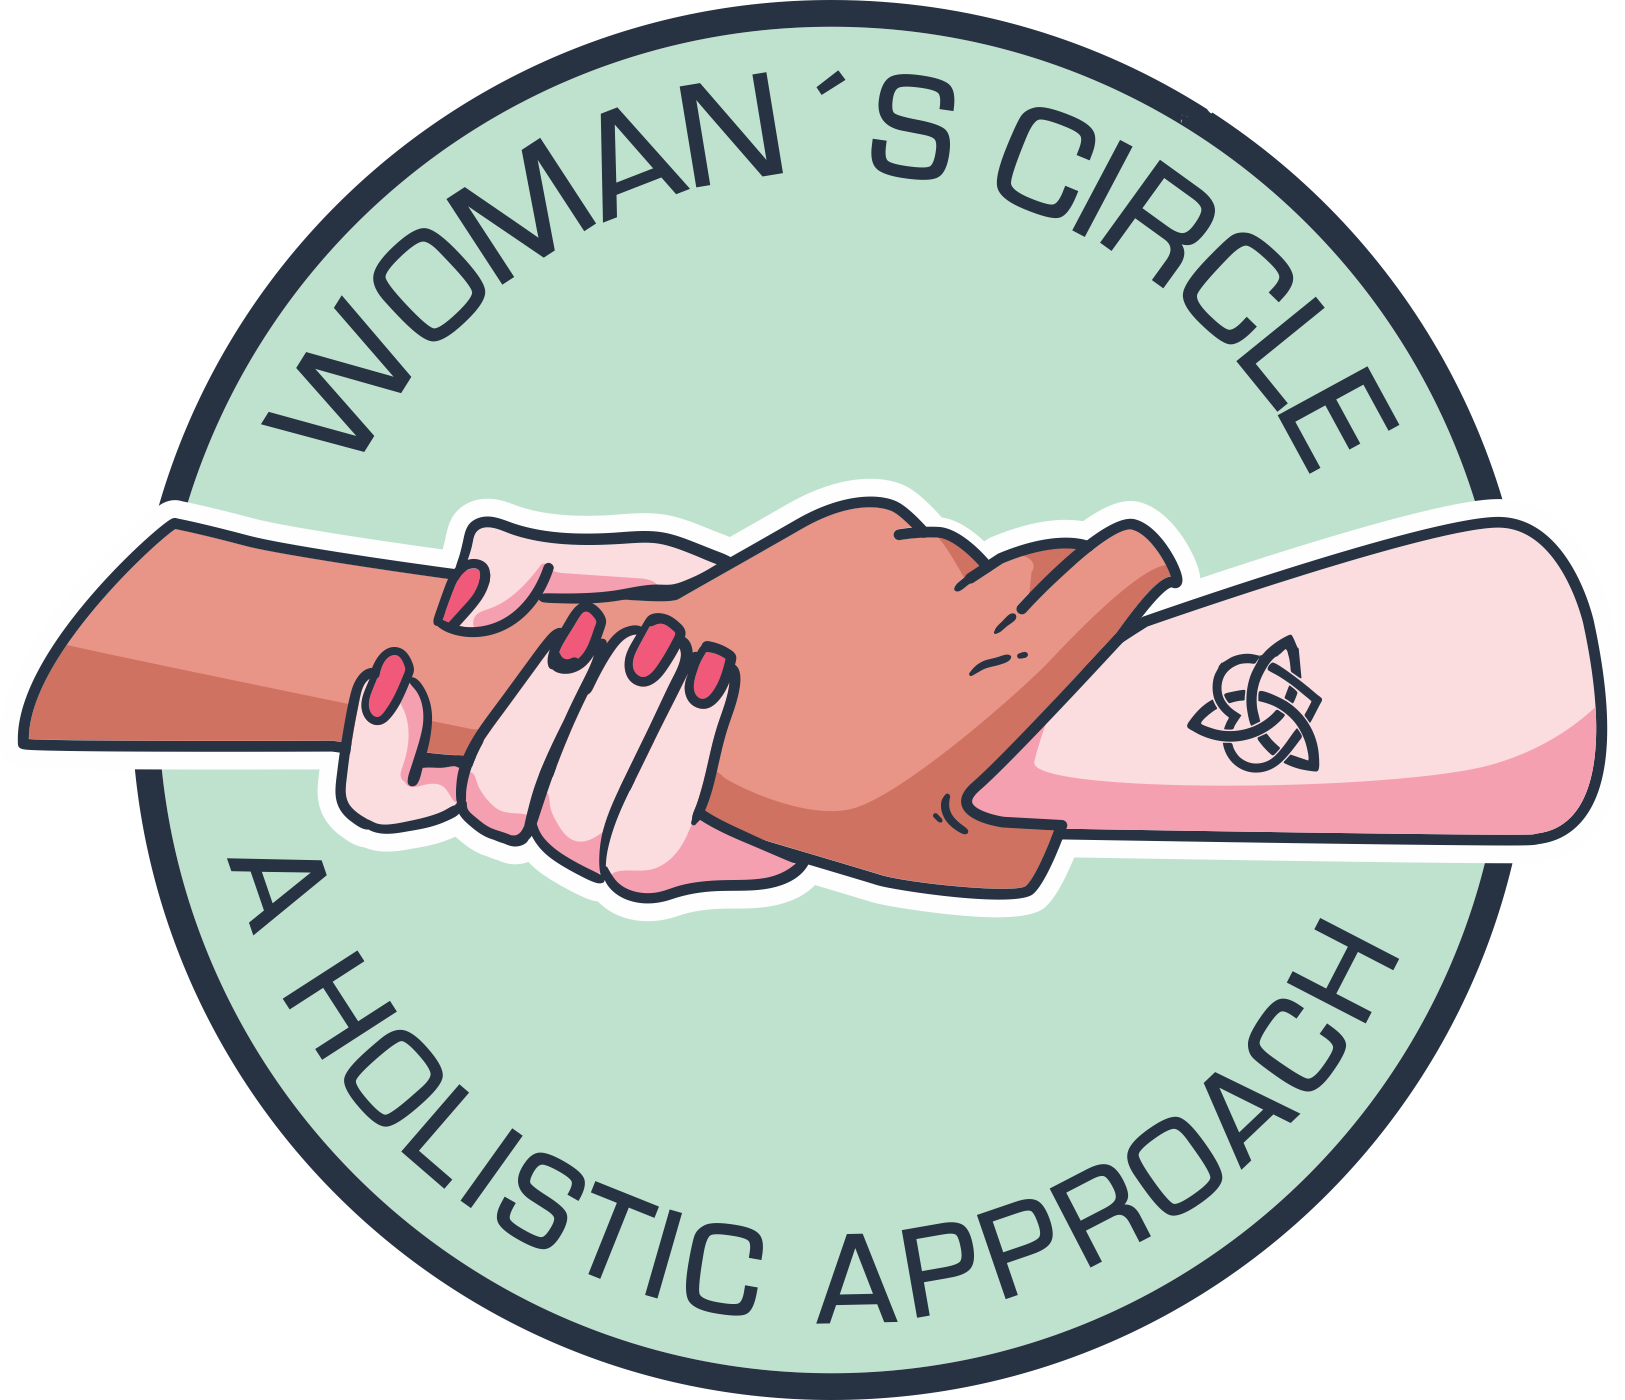 Woman's Circle